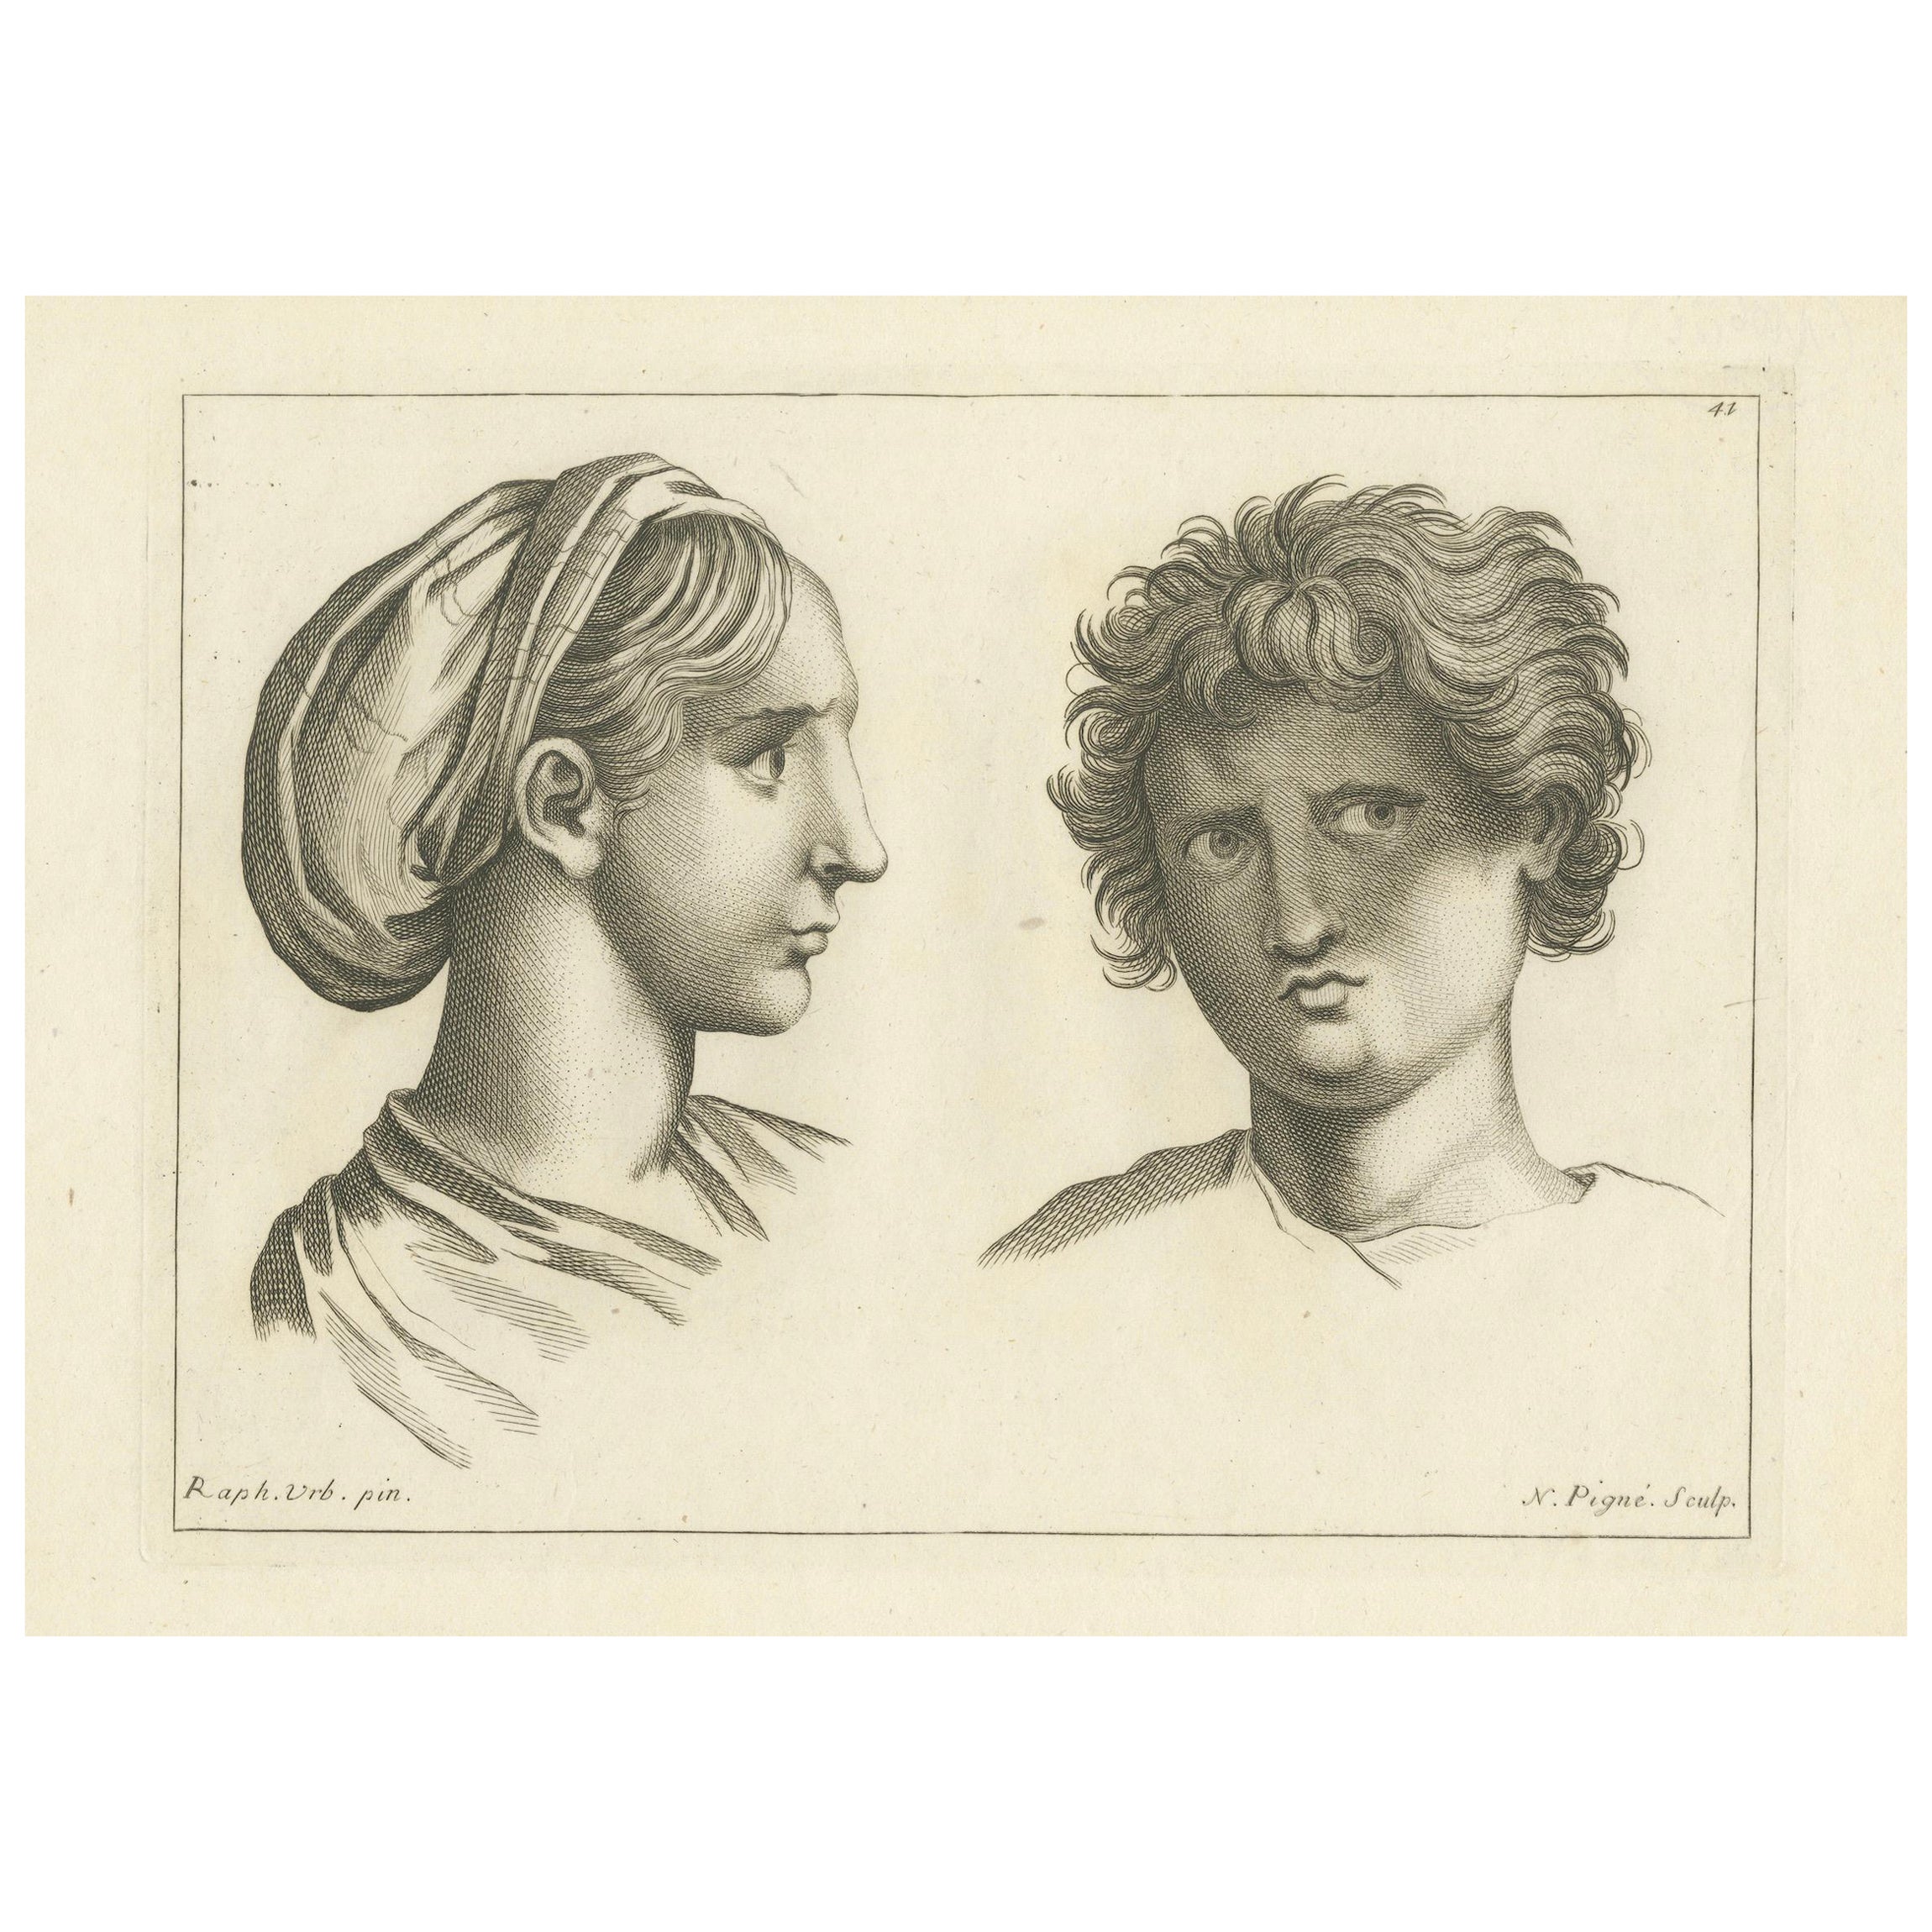 Classical Profiles: Raphael's Vision by Nicolas Pigné, 1740 For Sale